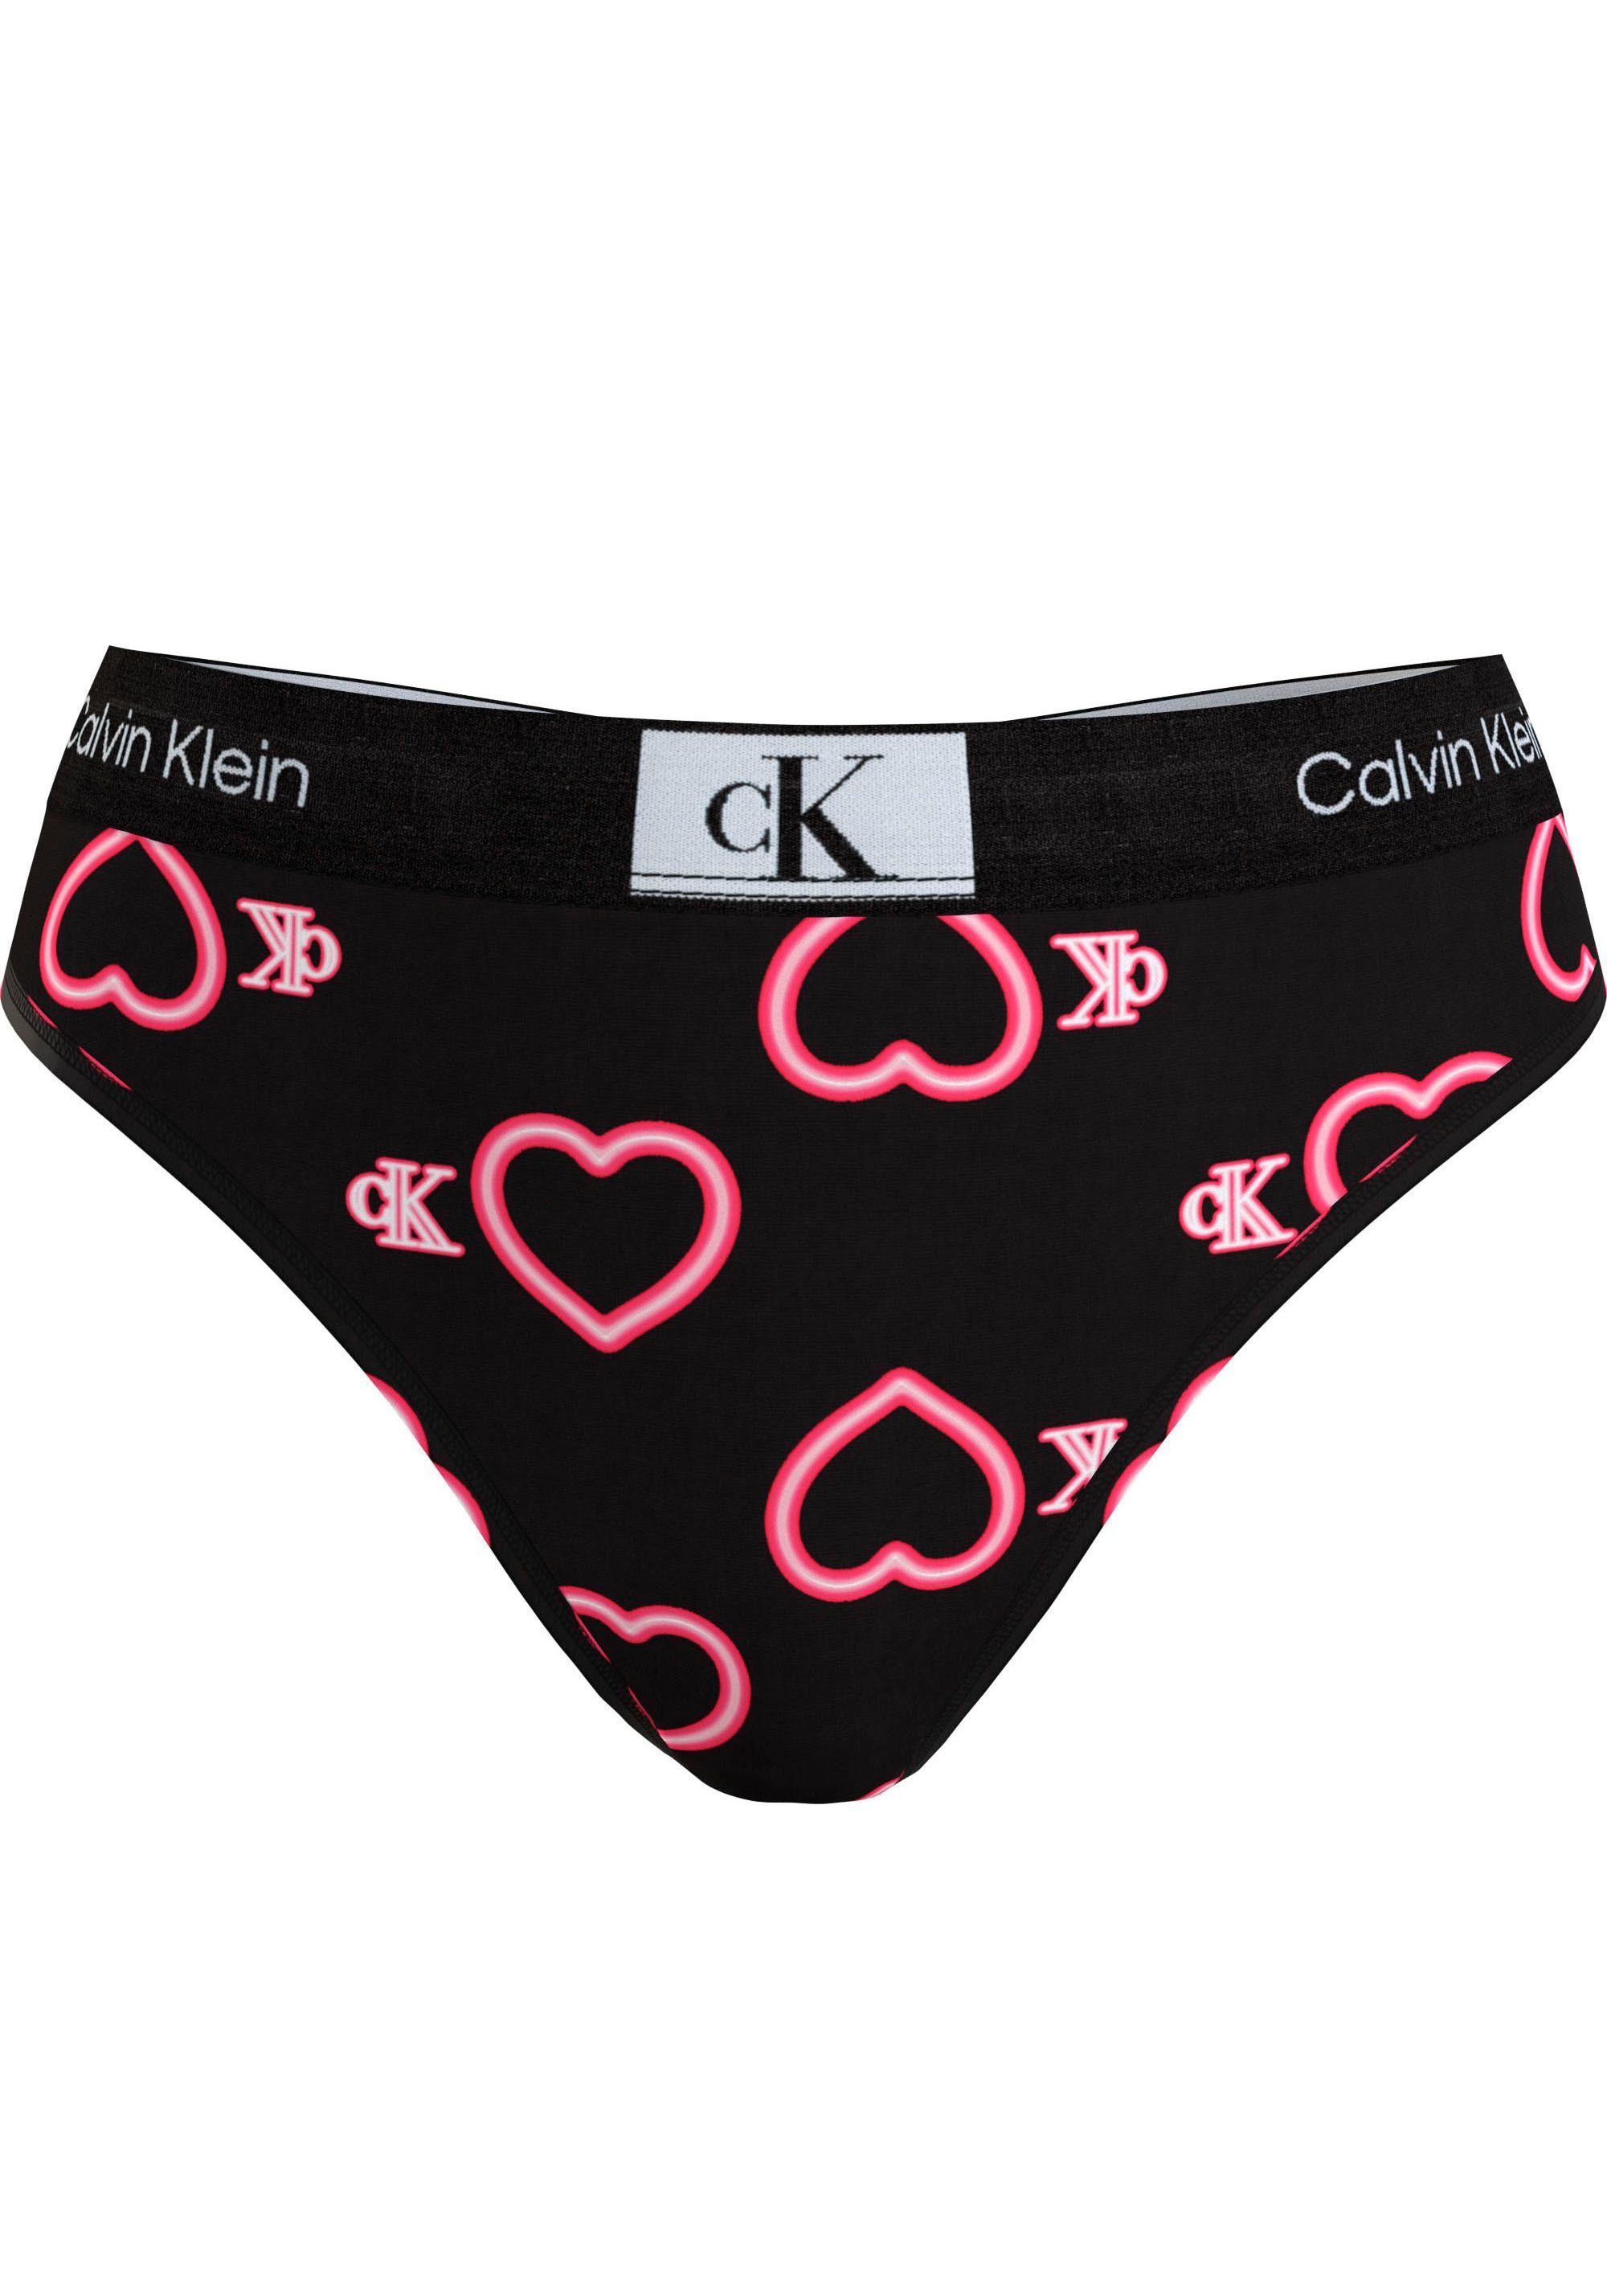 MODERN Elastikbund, sportlichem Underwear Thong T-String Klein von Klein THONG Calvin Calvin Underwear mit